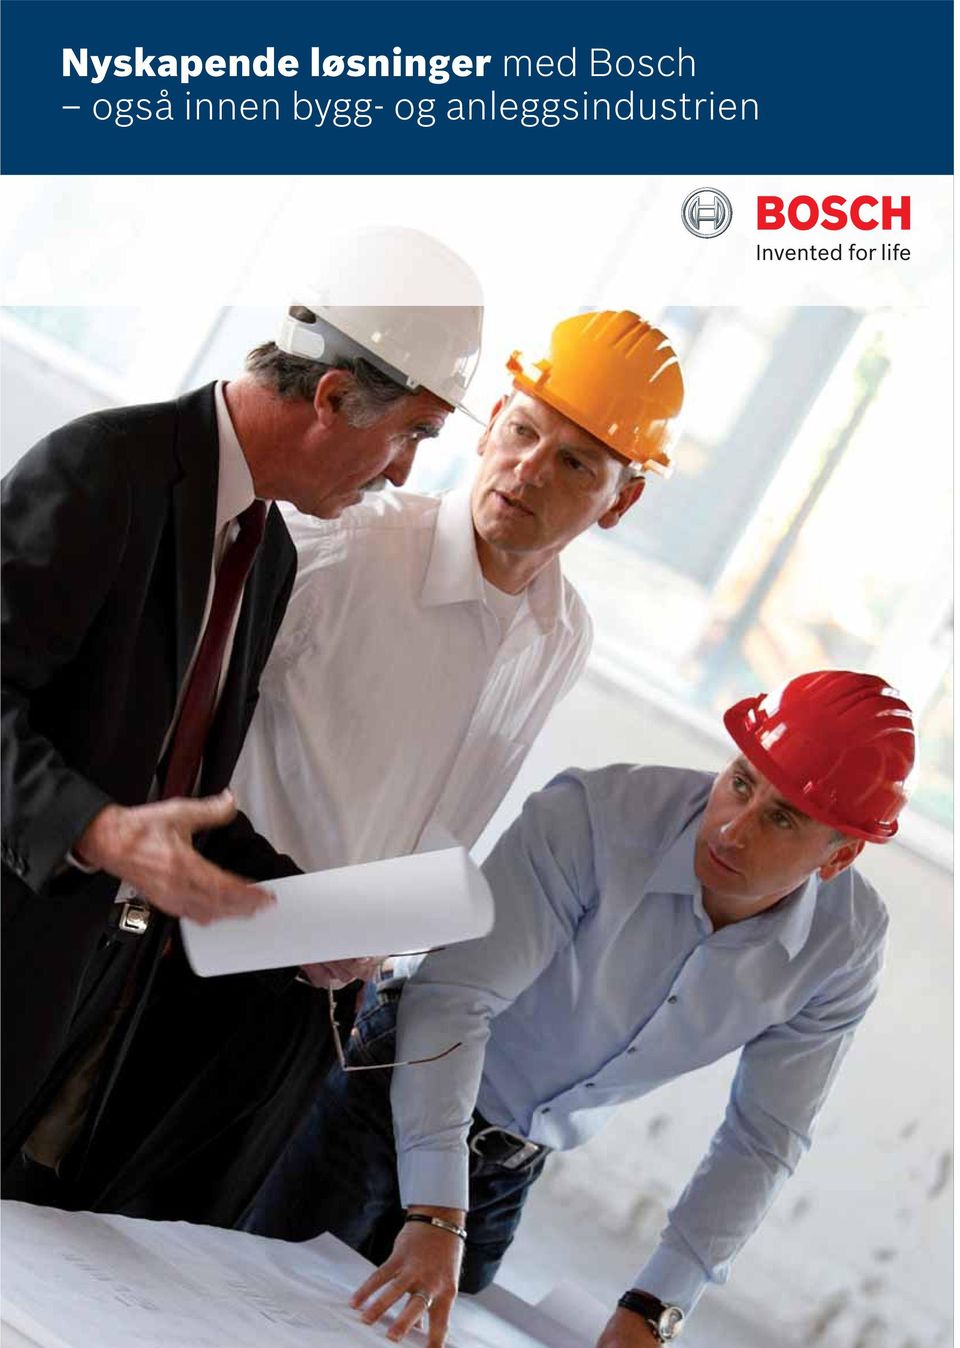 Bosch også innen